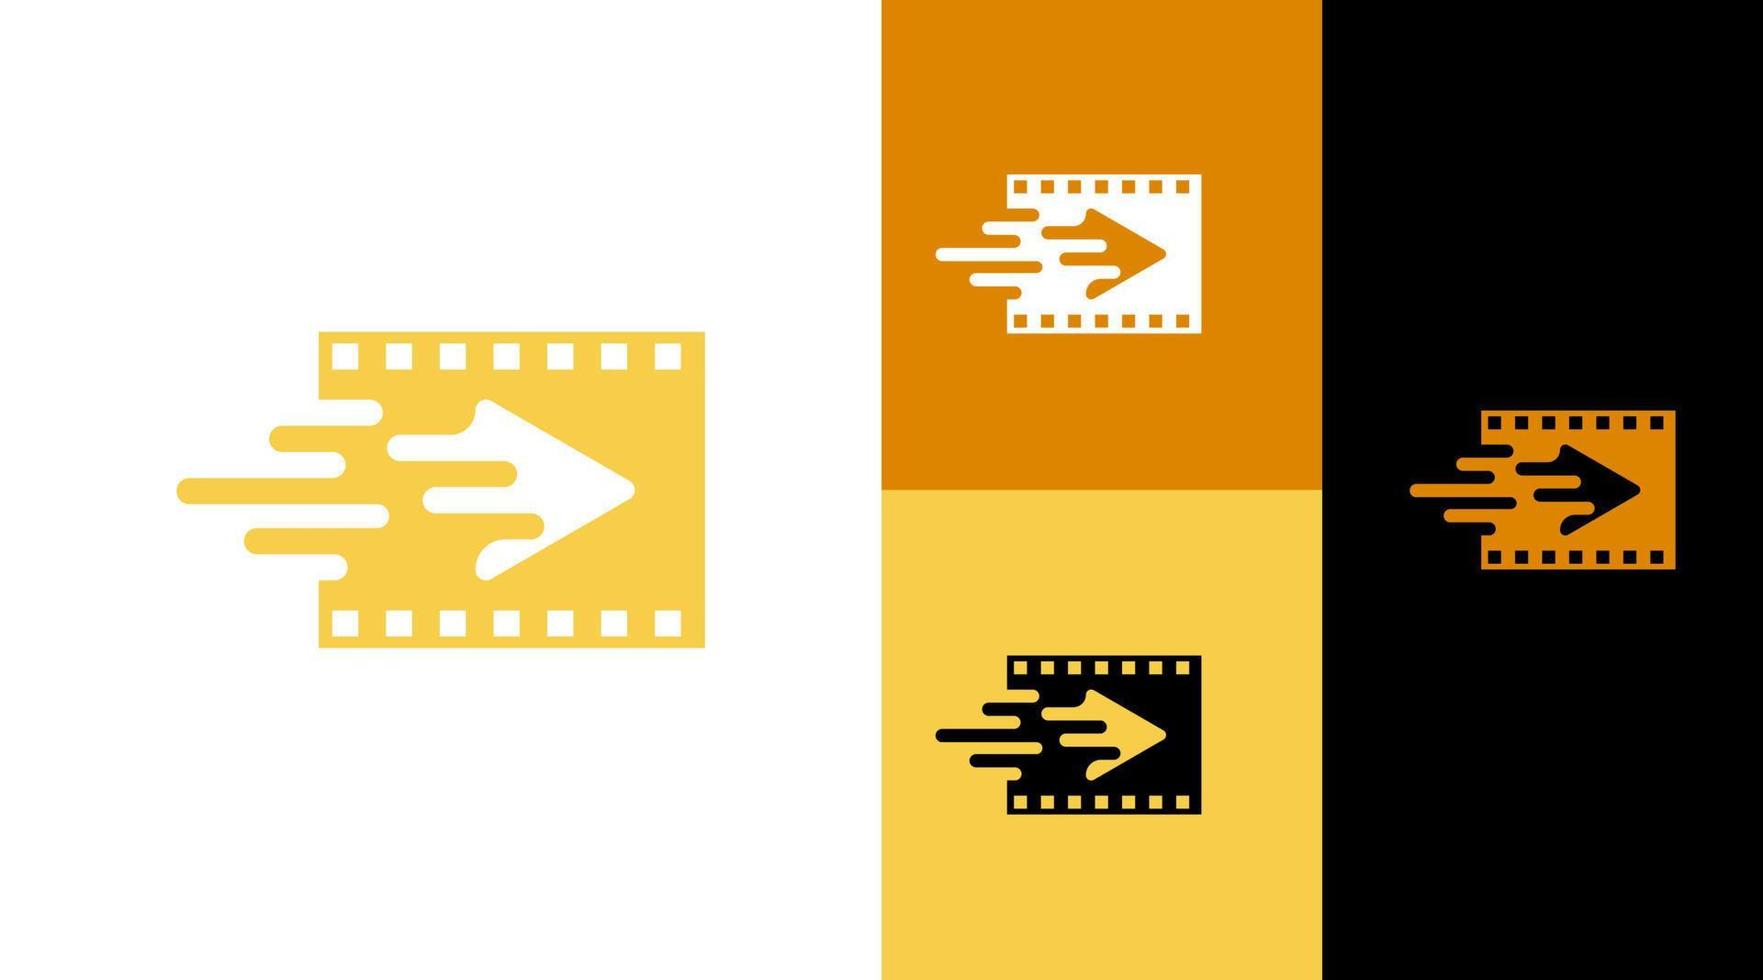 Play Button Video Editor Reel Application Icon Logo Design Concept vector